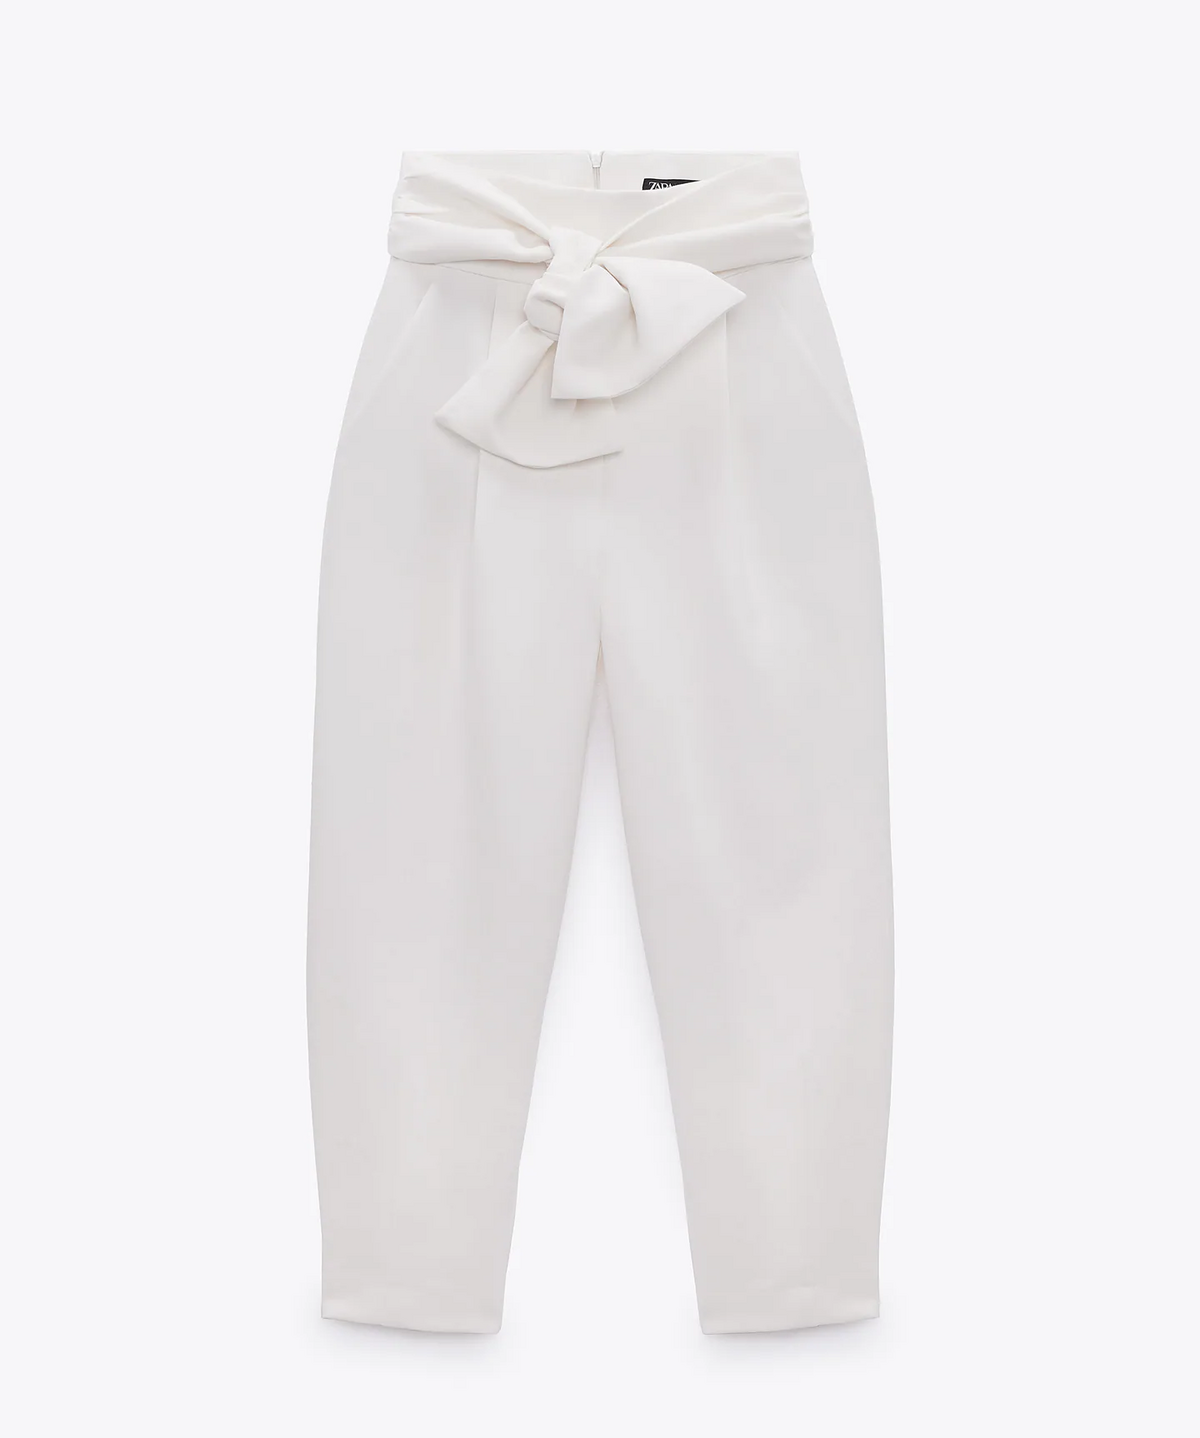 Estos son los pantalones blancos de Zara que más estilizan y que